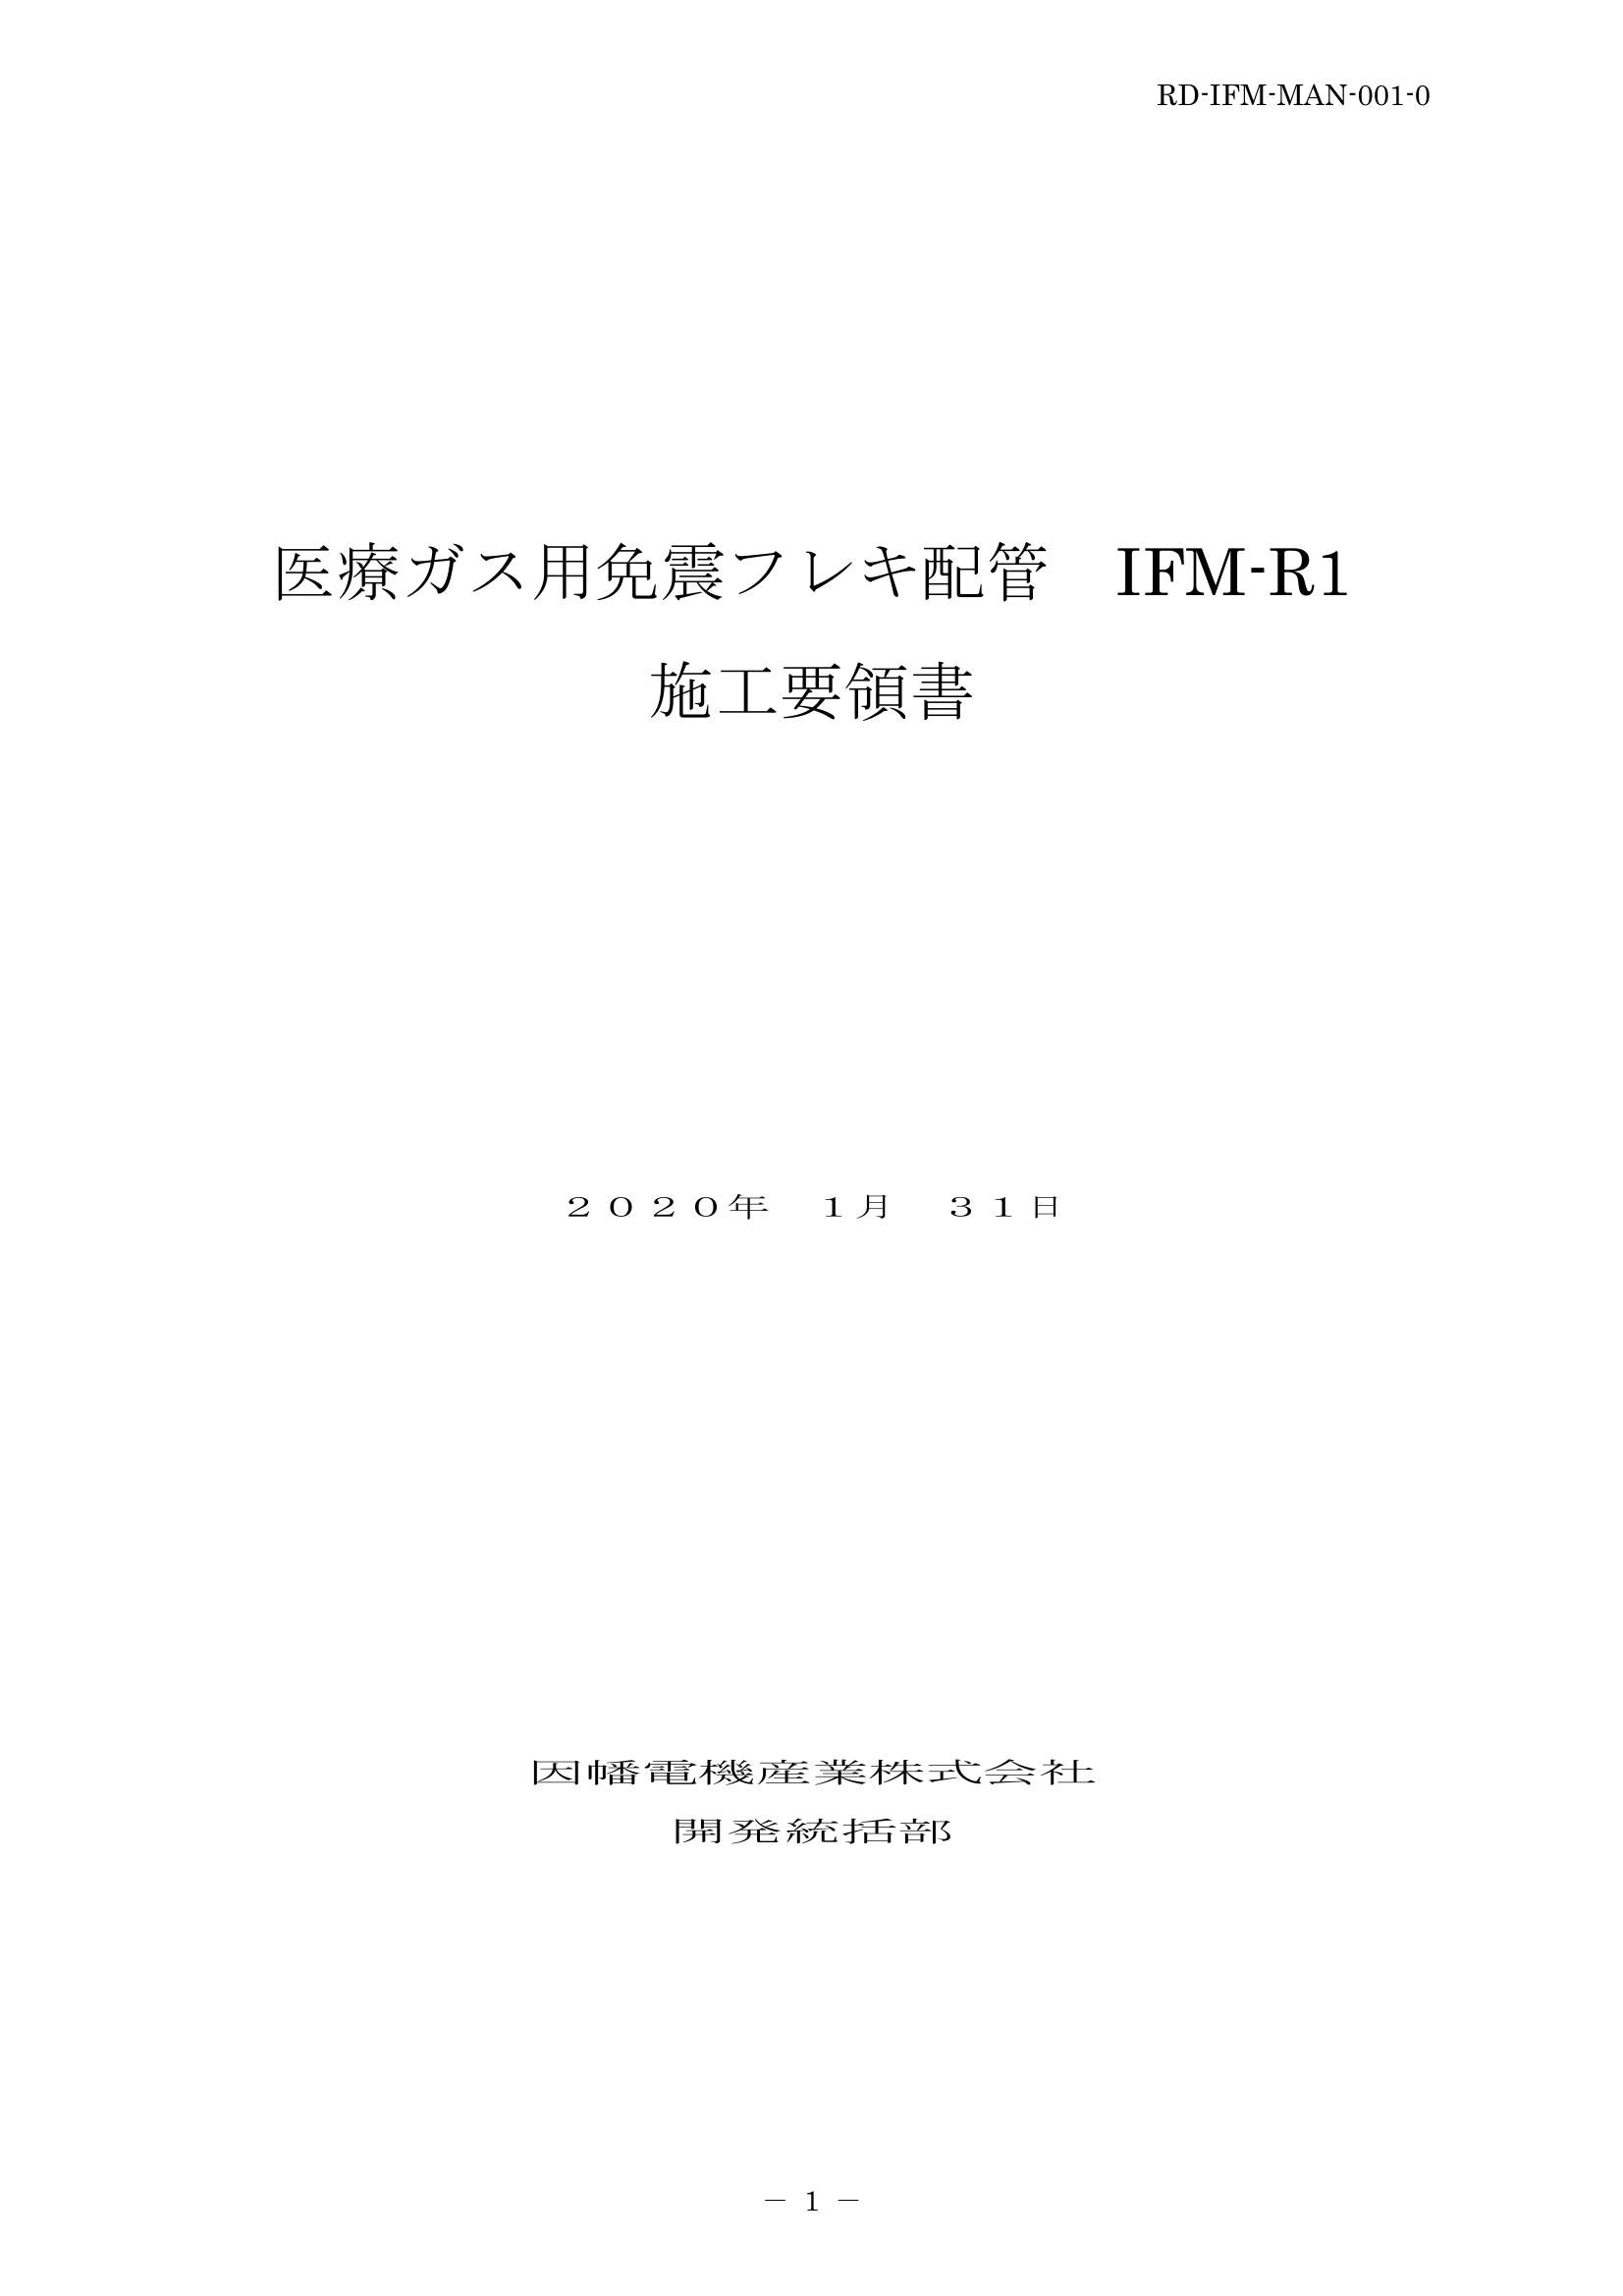 IFM_施工要領手順書_20200131.pdf